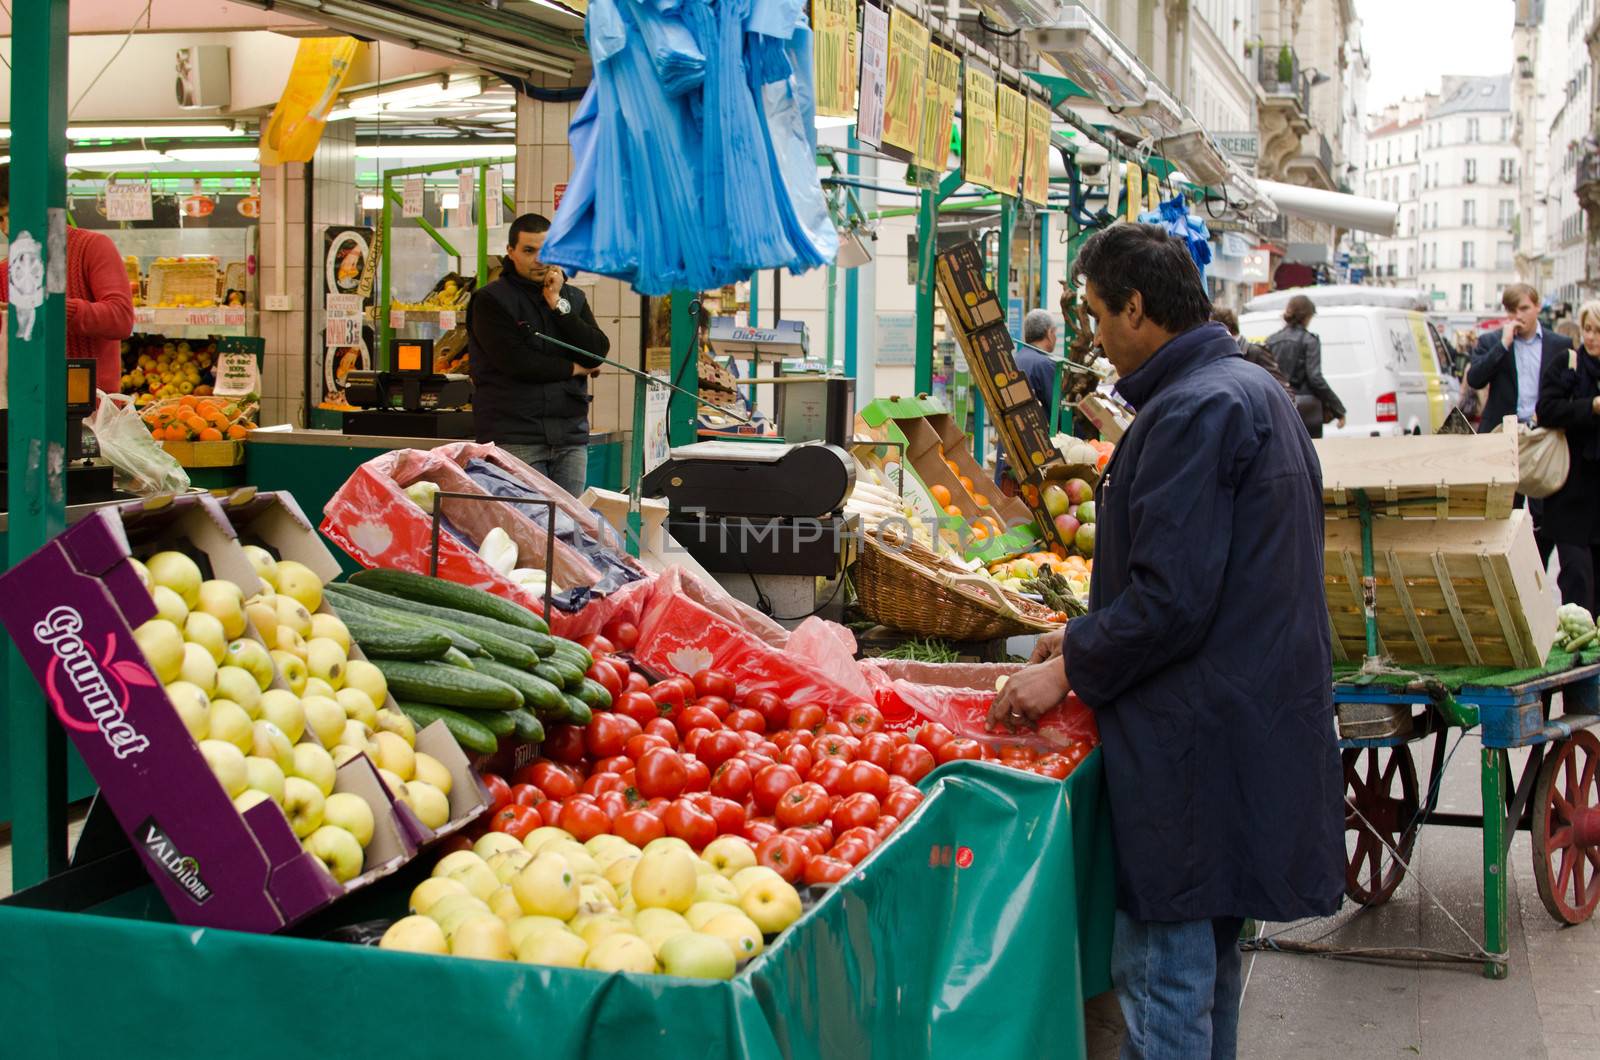 fair food, Paris by lauria